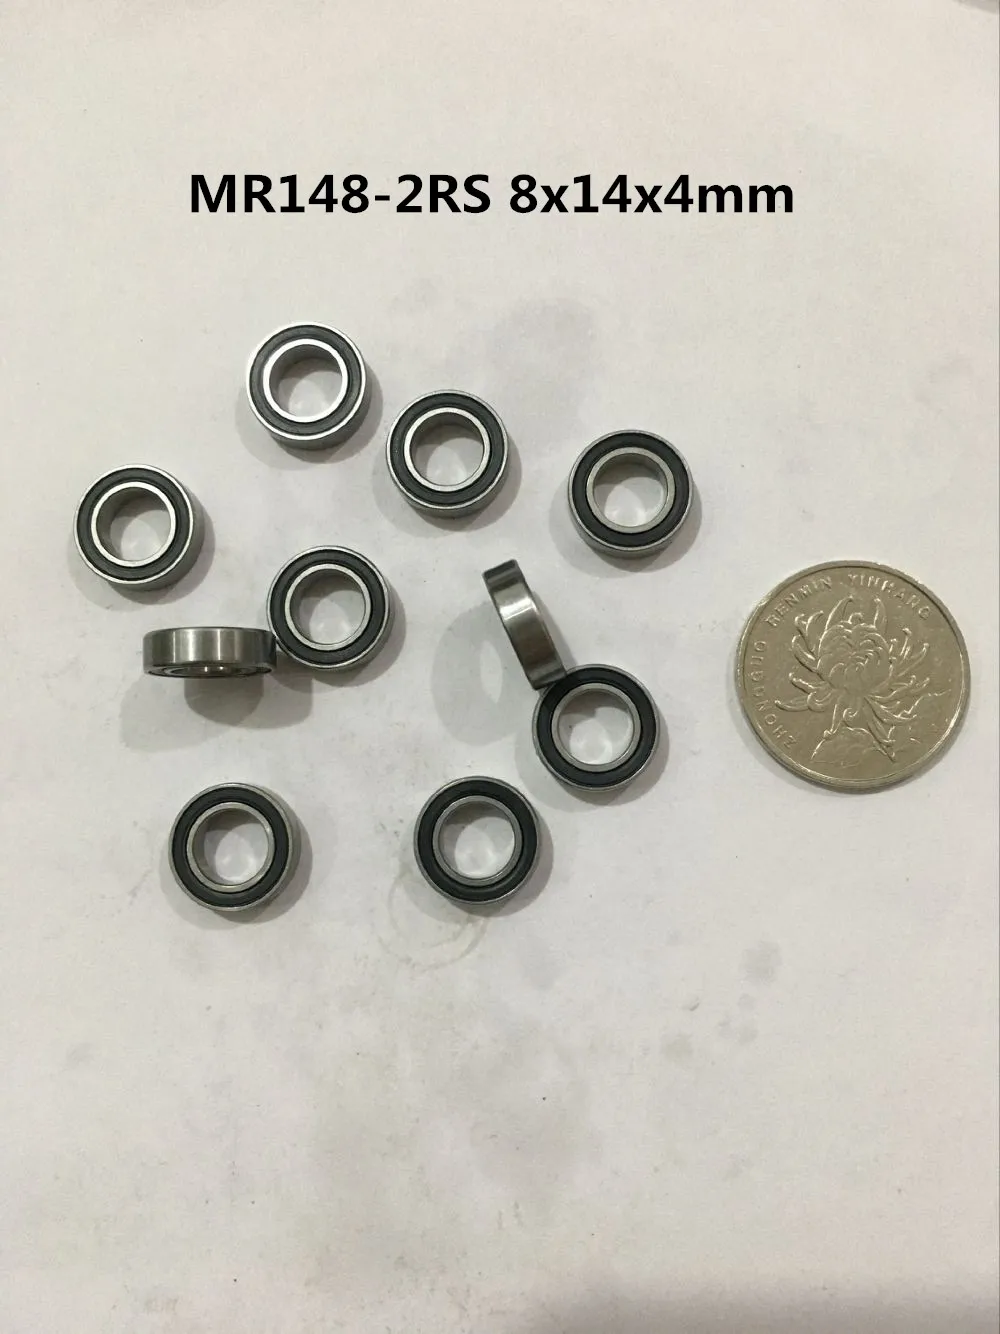 Mr74 Miniature Ball Bearings, Mr85 Miniature Bearings Ball